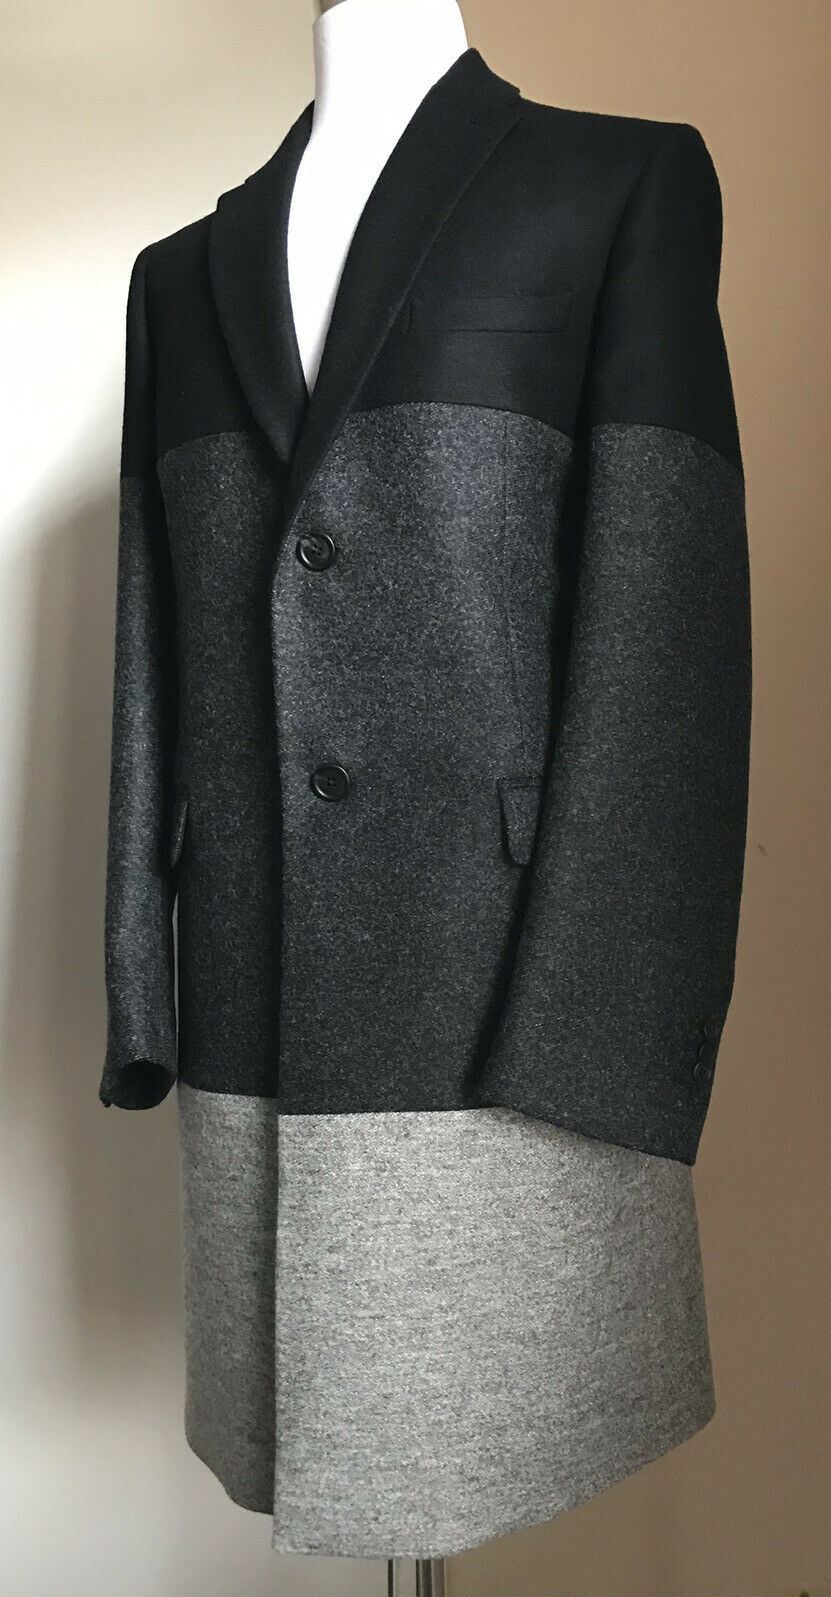 Новое мужское пальто Fendi черного/серого цвета за 2250 долларов, размер 44 США (54 Ita) Италия